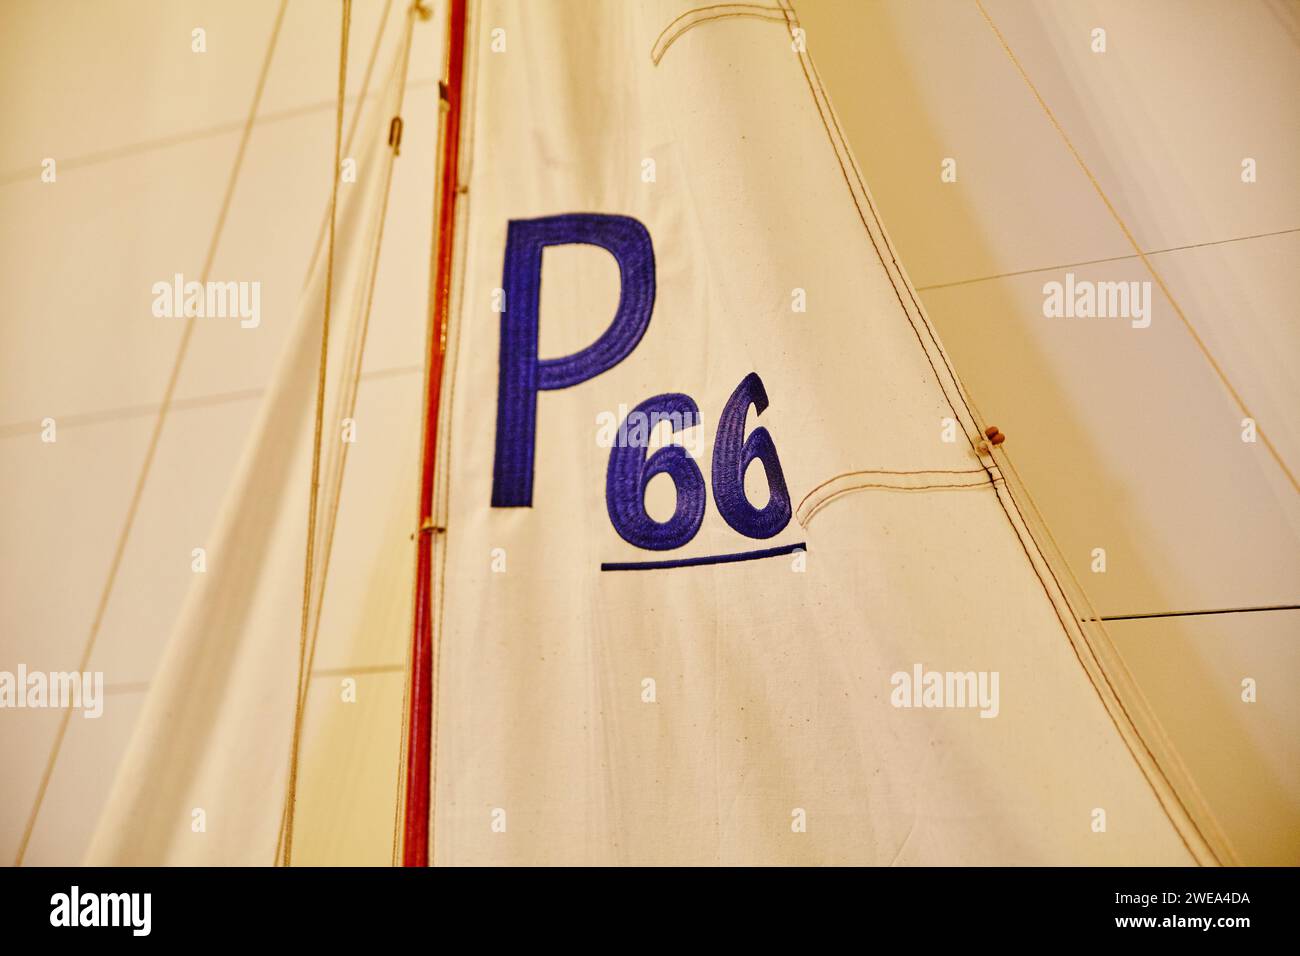 Sailboat Racing Numbers P66 Detail - Textured Sail Close-Up Stock Photo